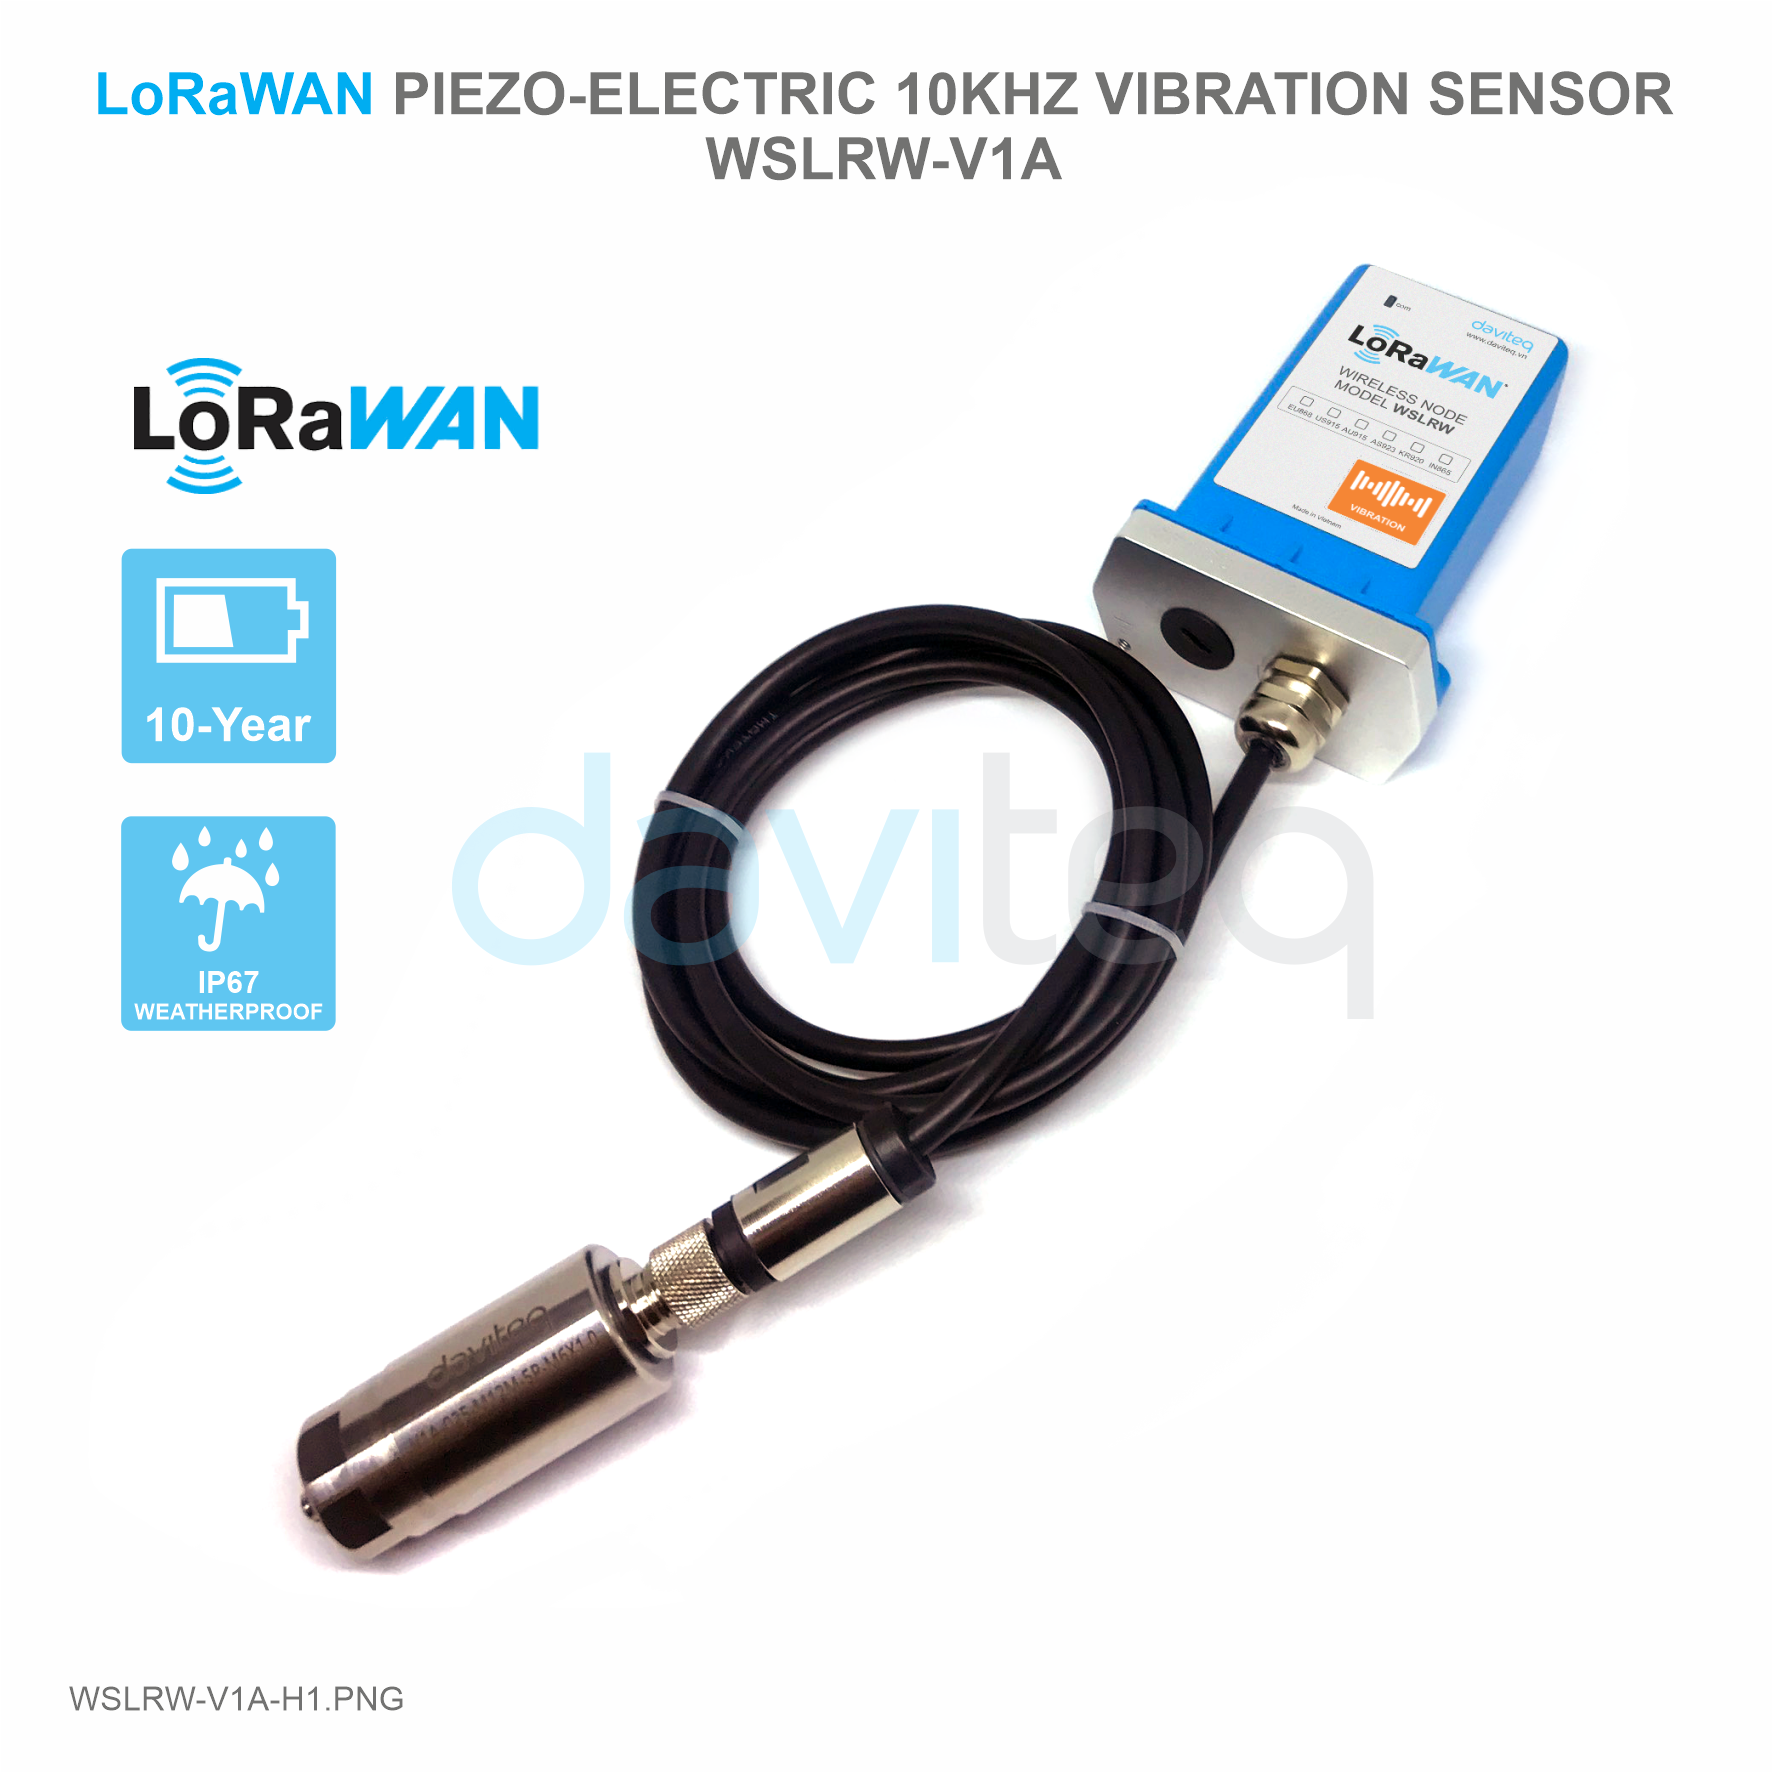 LoRaWAN Piezo-Electric 10KHz Vibration Sensor